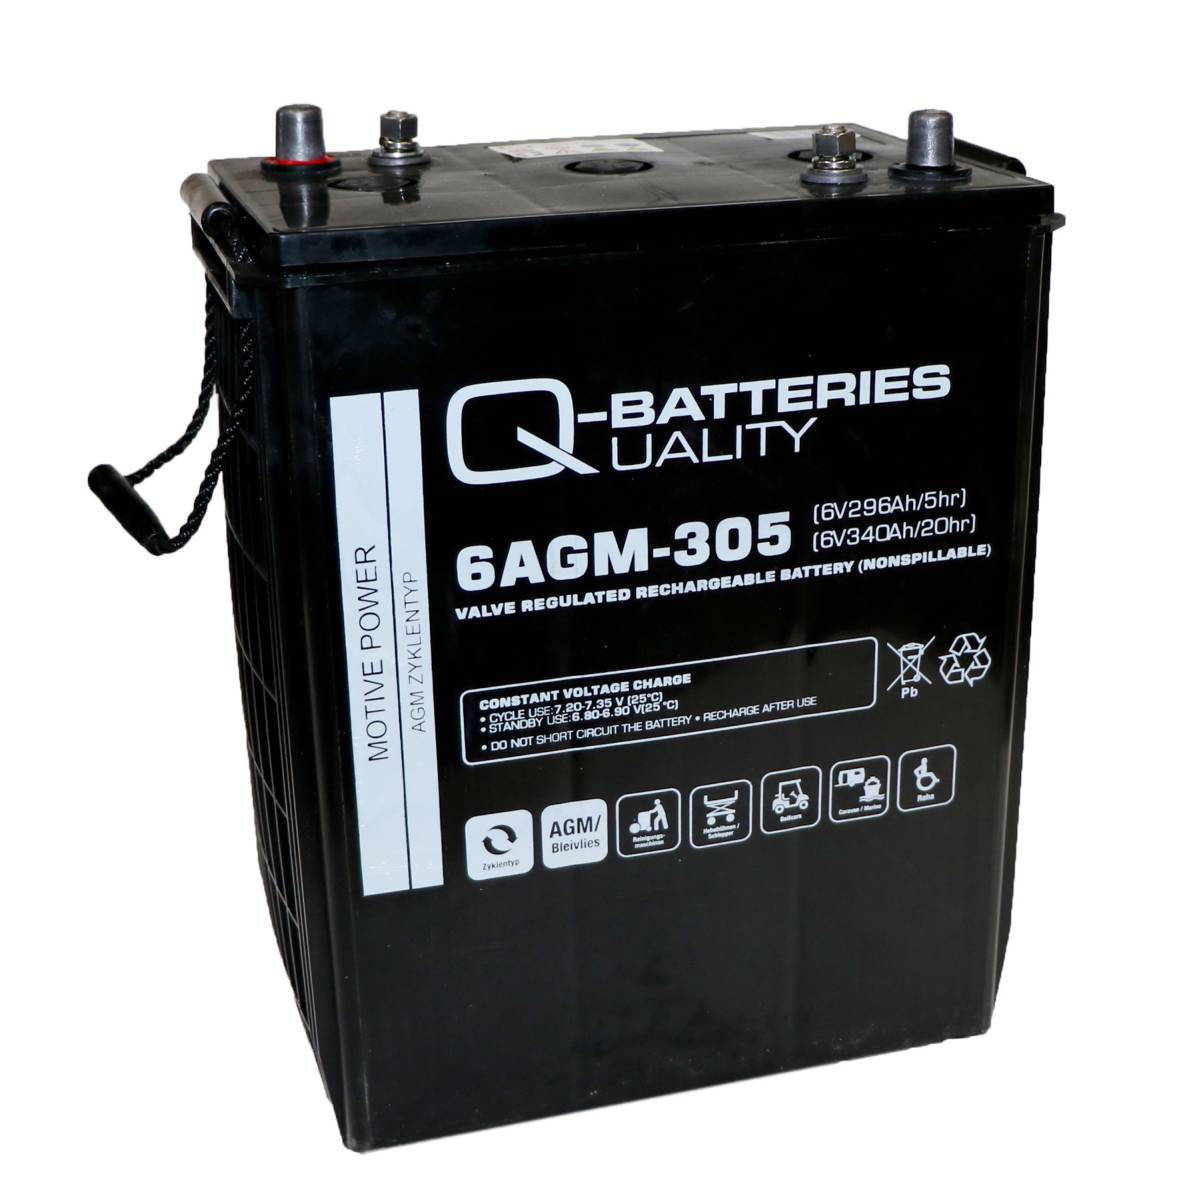 Q-Batterie 6AGM-305 Batteria trazione 6V 296Ah (5h) 340Ah(20h) batteria AGM senza manutenzione